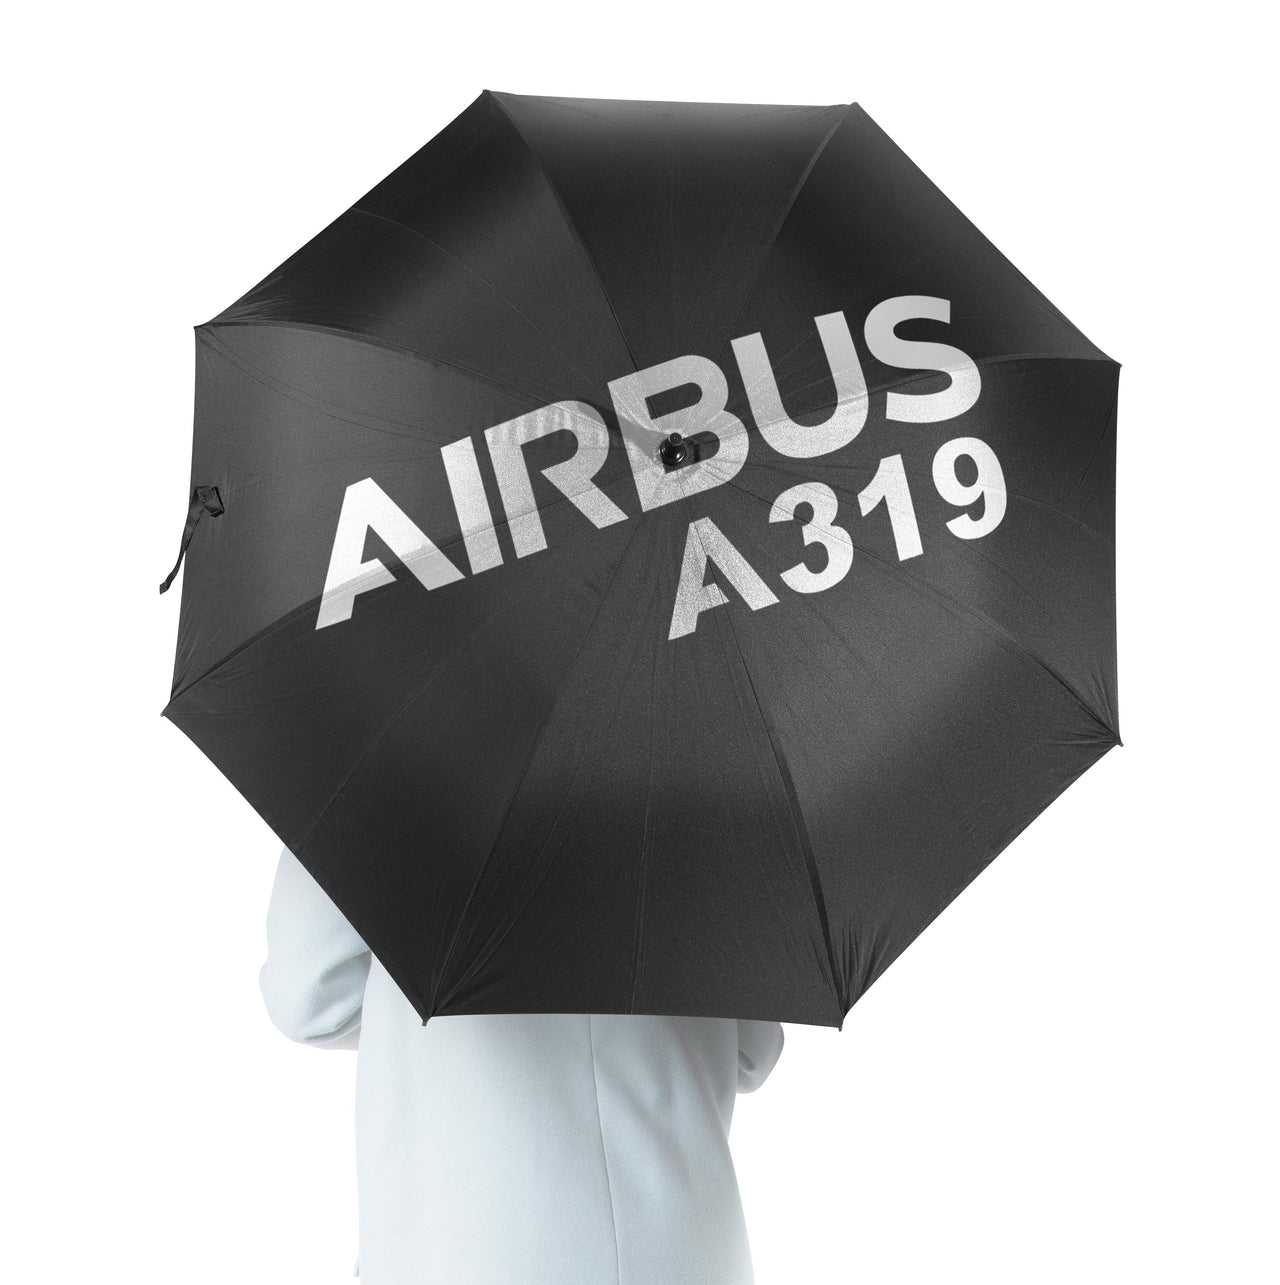 Airbus A319 & Text Designed Umbrella